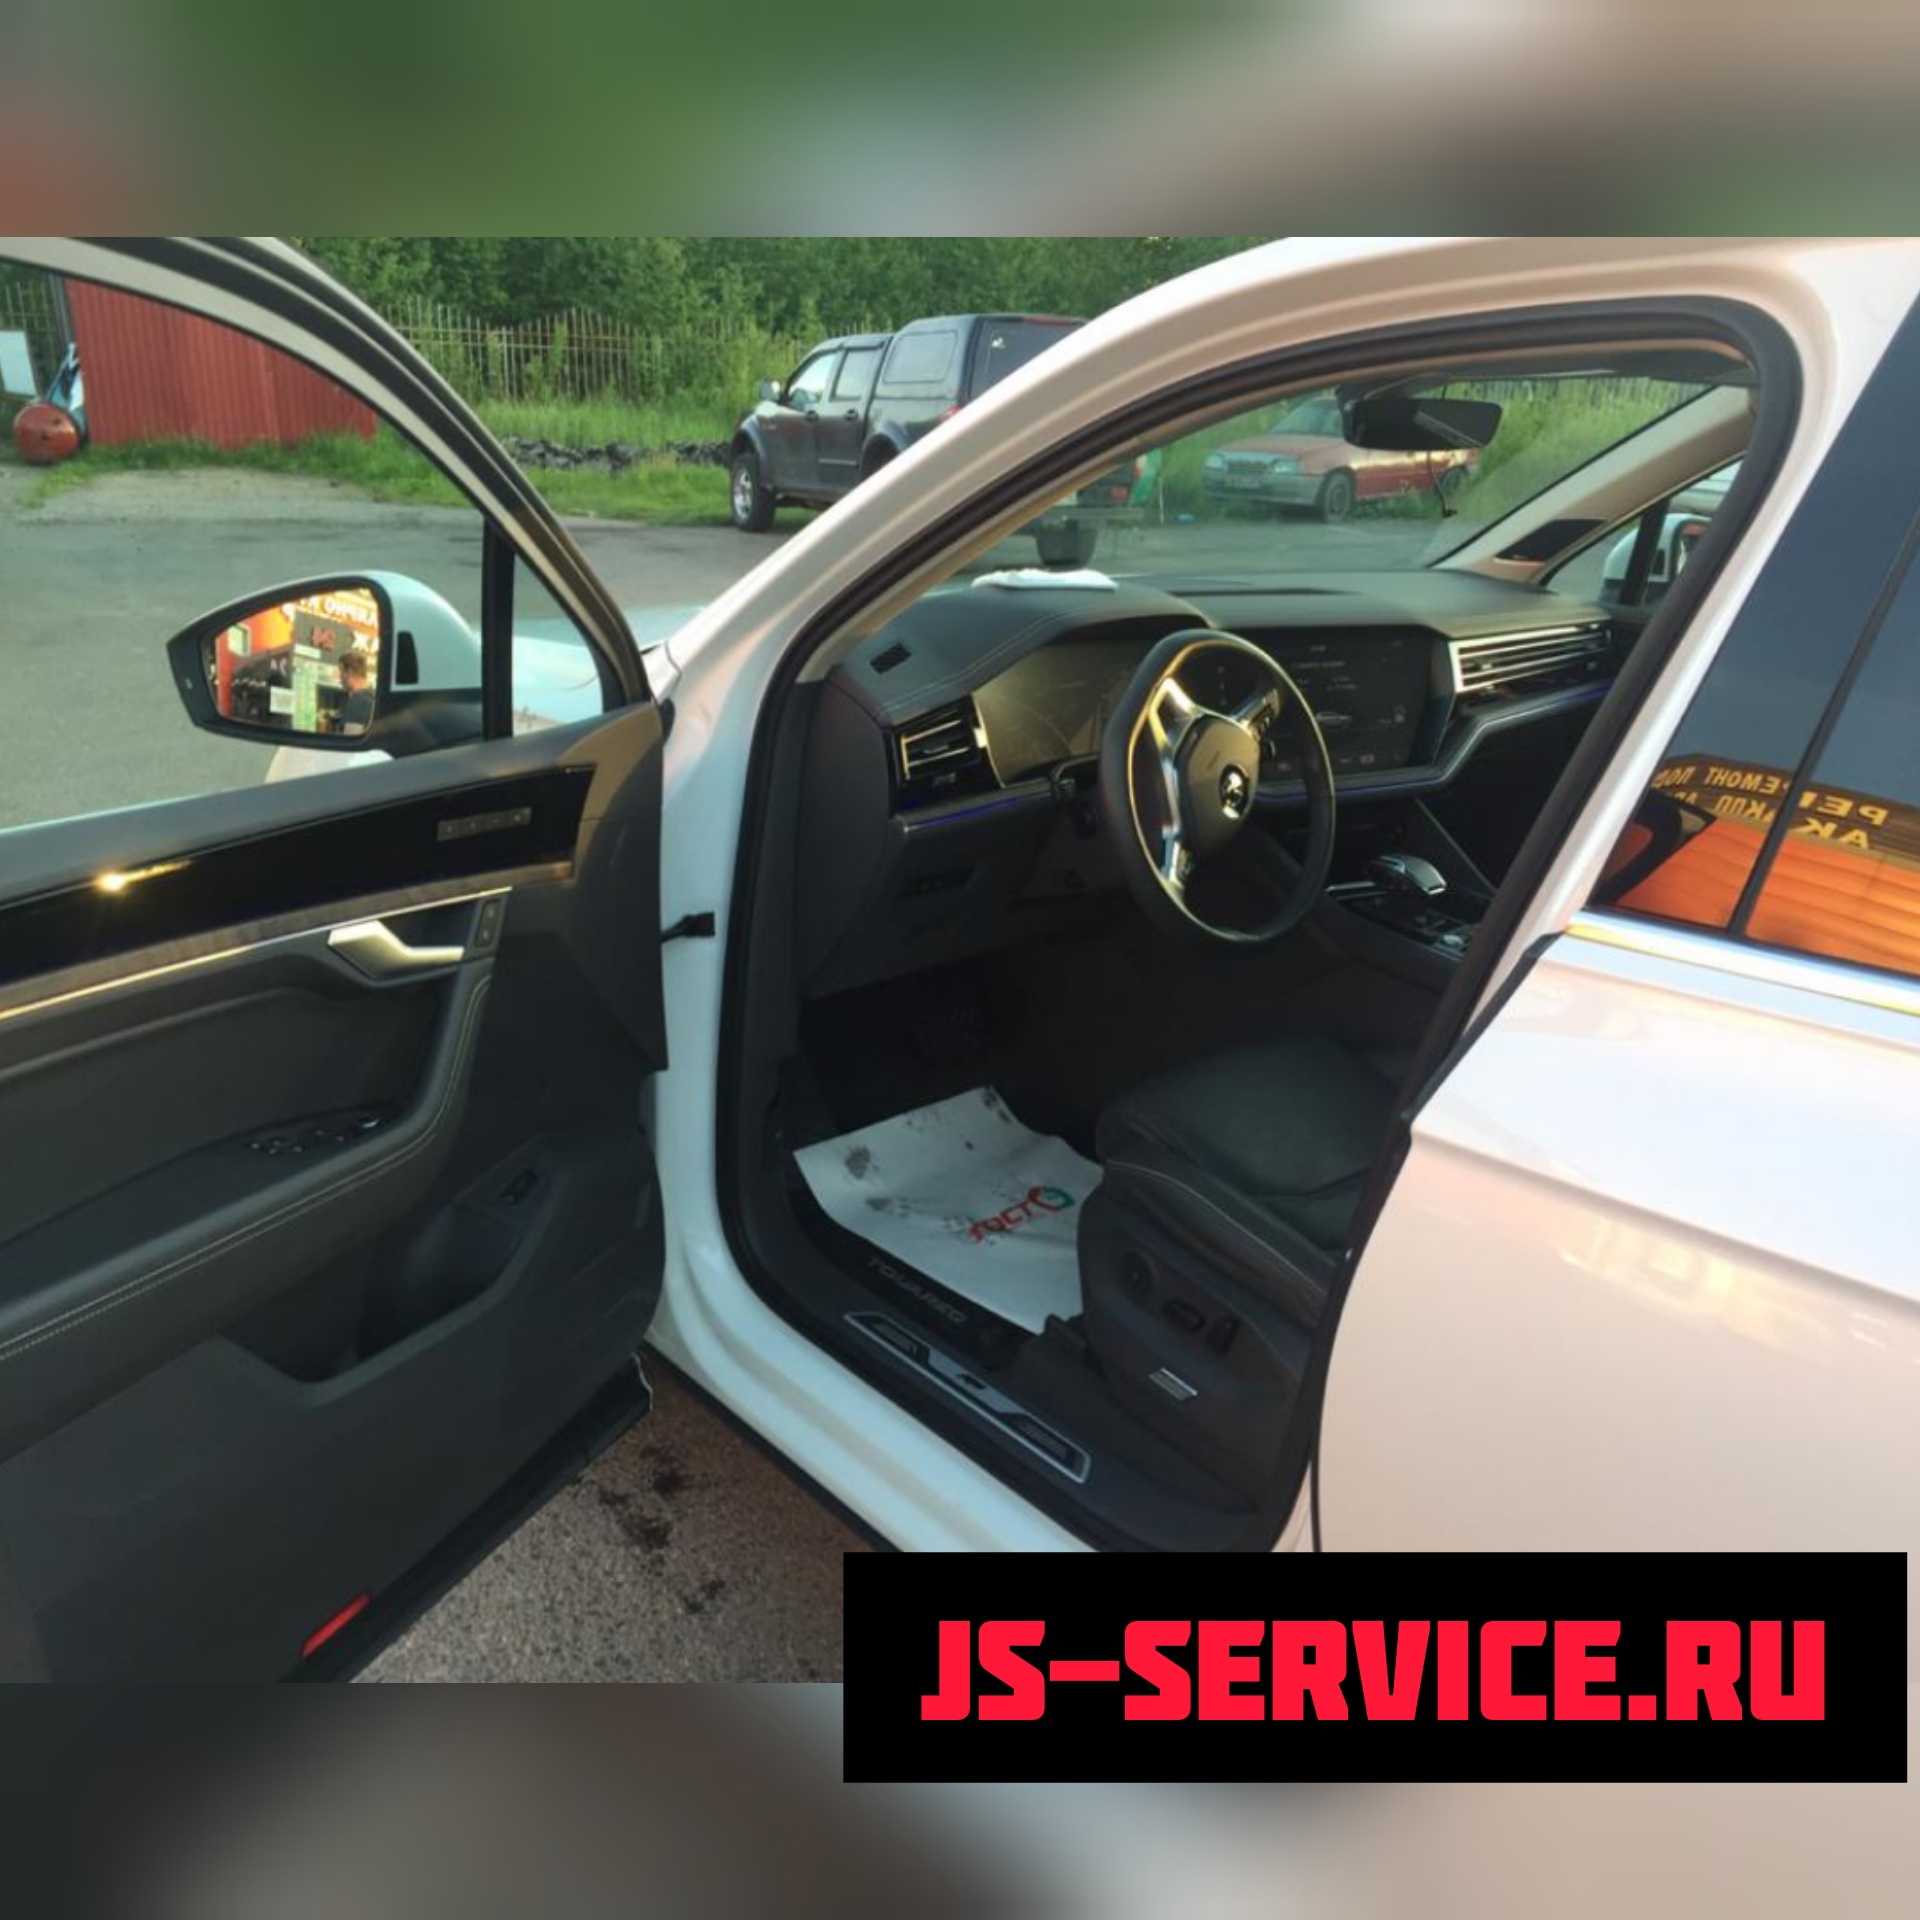 Volkswagen Touareg 2019 кузовной ремонт в филиале Колпино Js-service.ru Колпино, Рабочий переулок дом 3.